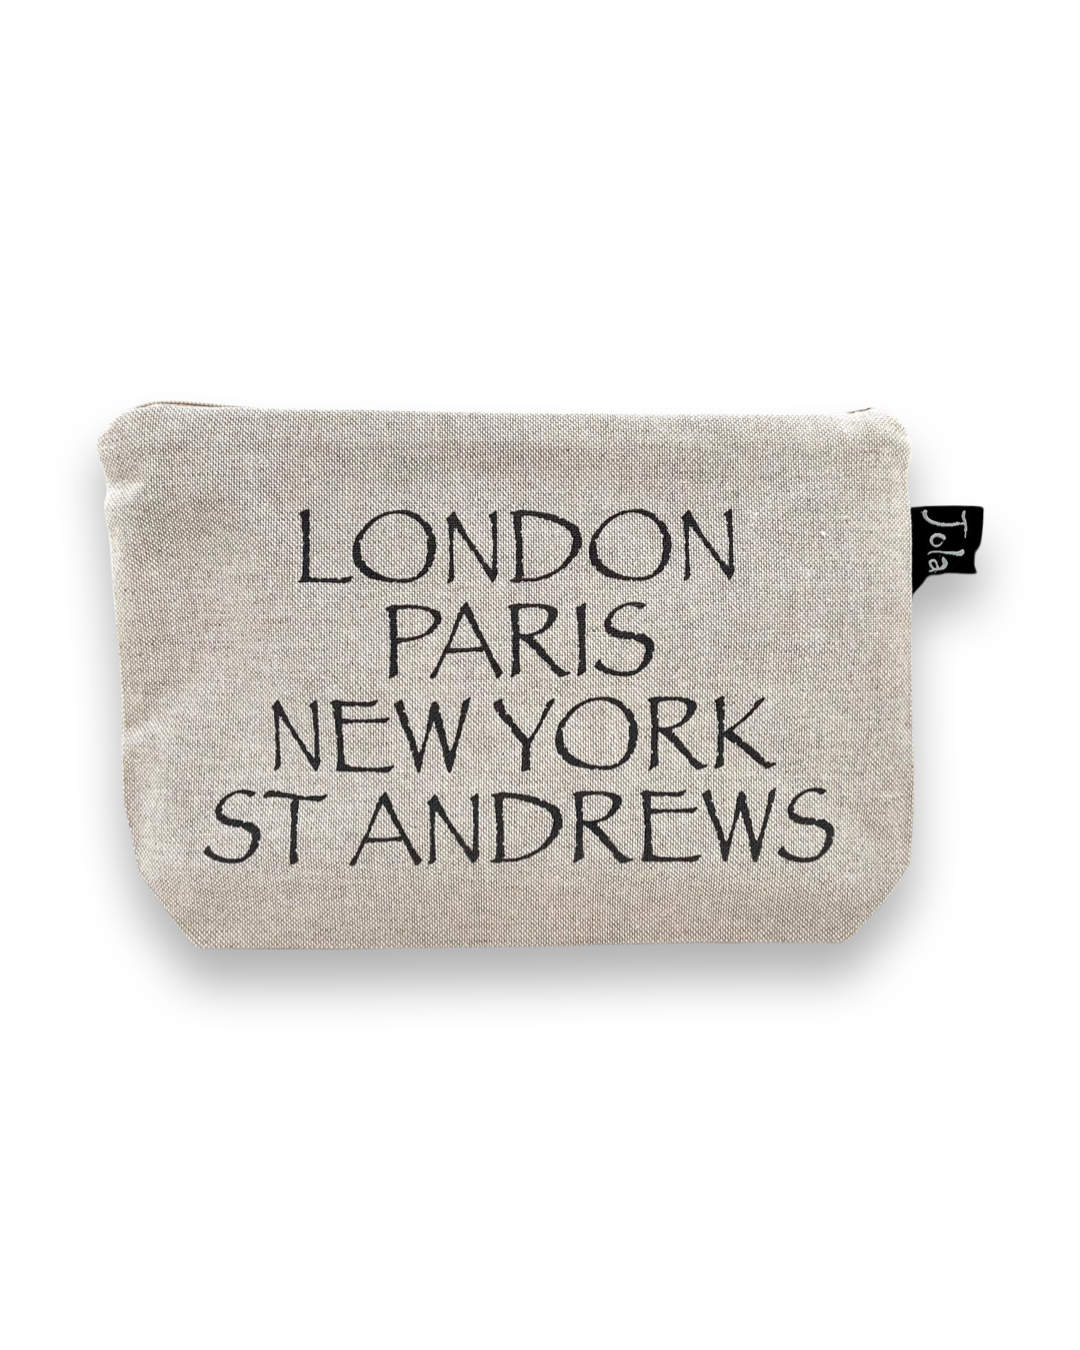 London Paris New York St Andrews Cosmetic Bag